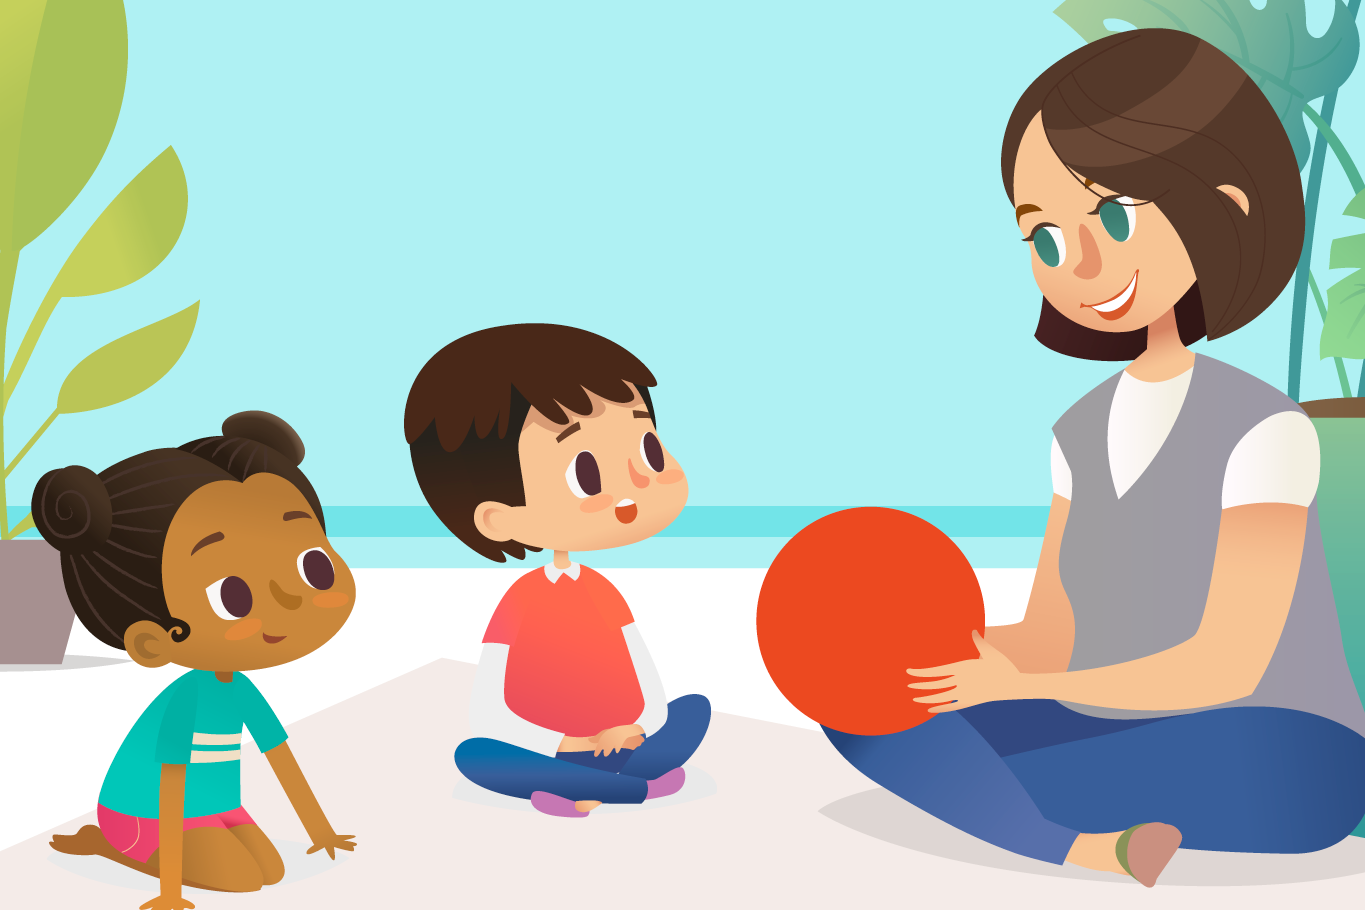 Juegos y actividades para estimular el desarrollo de niños de 1 a